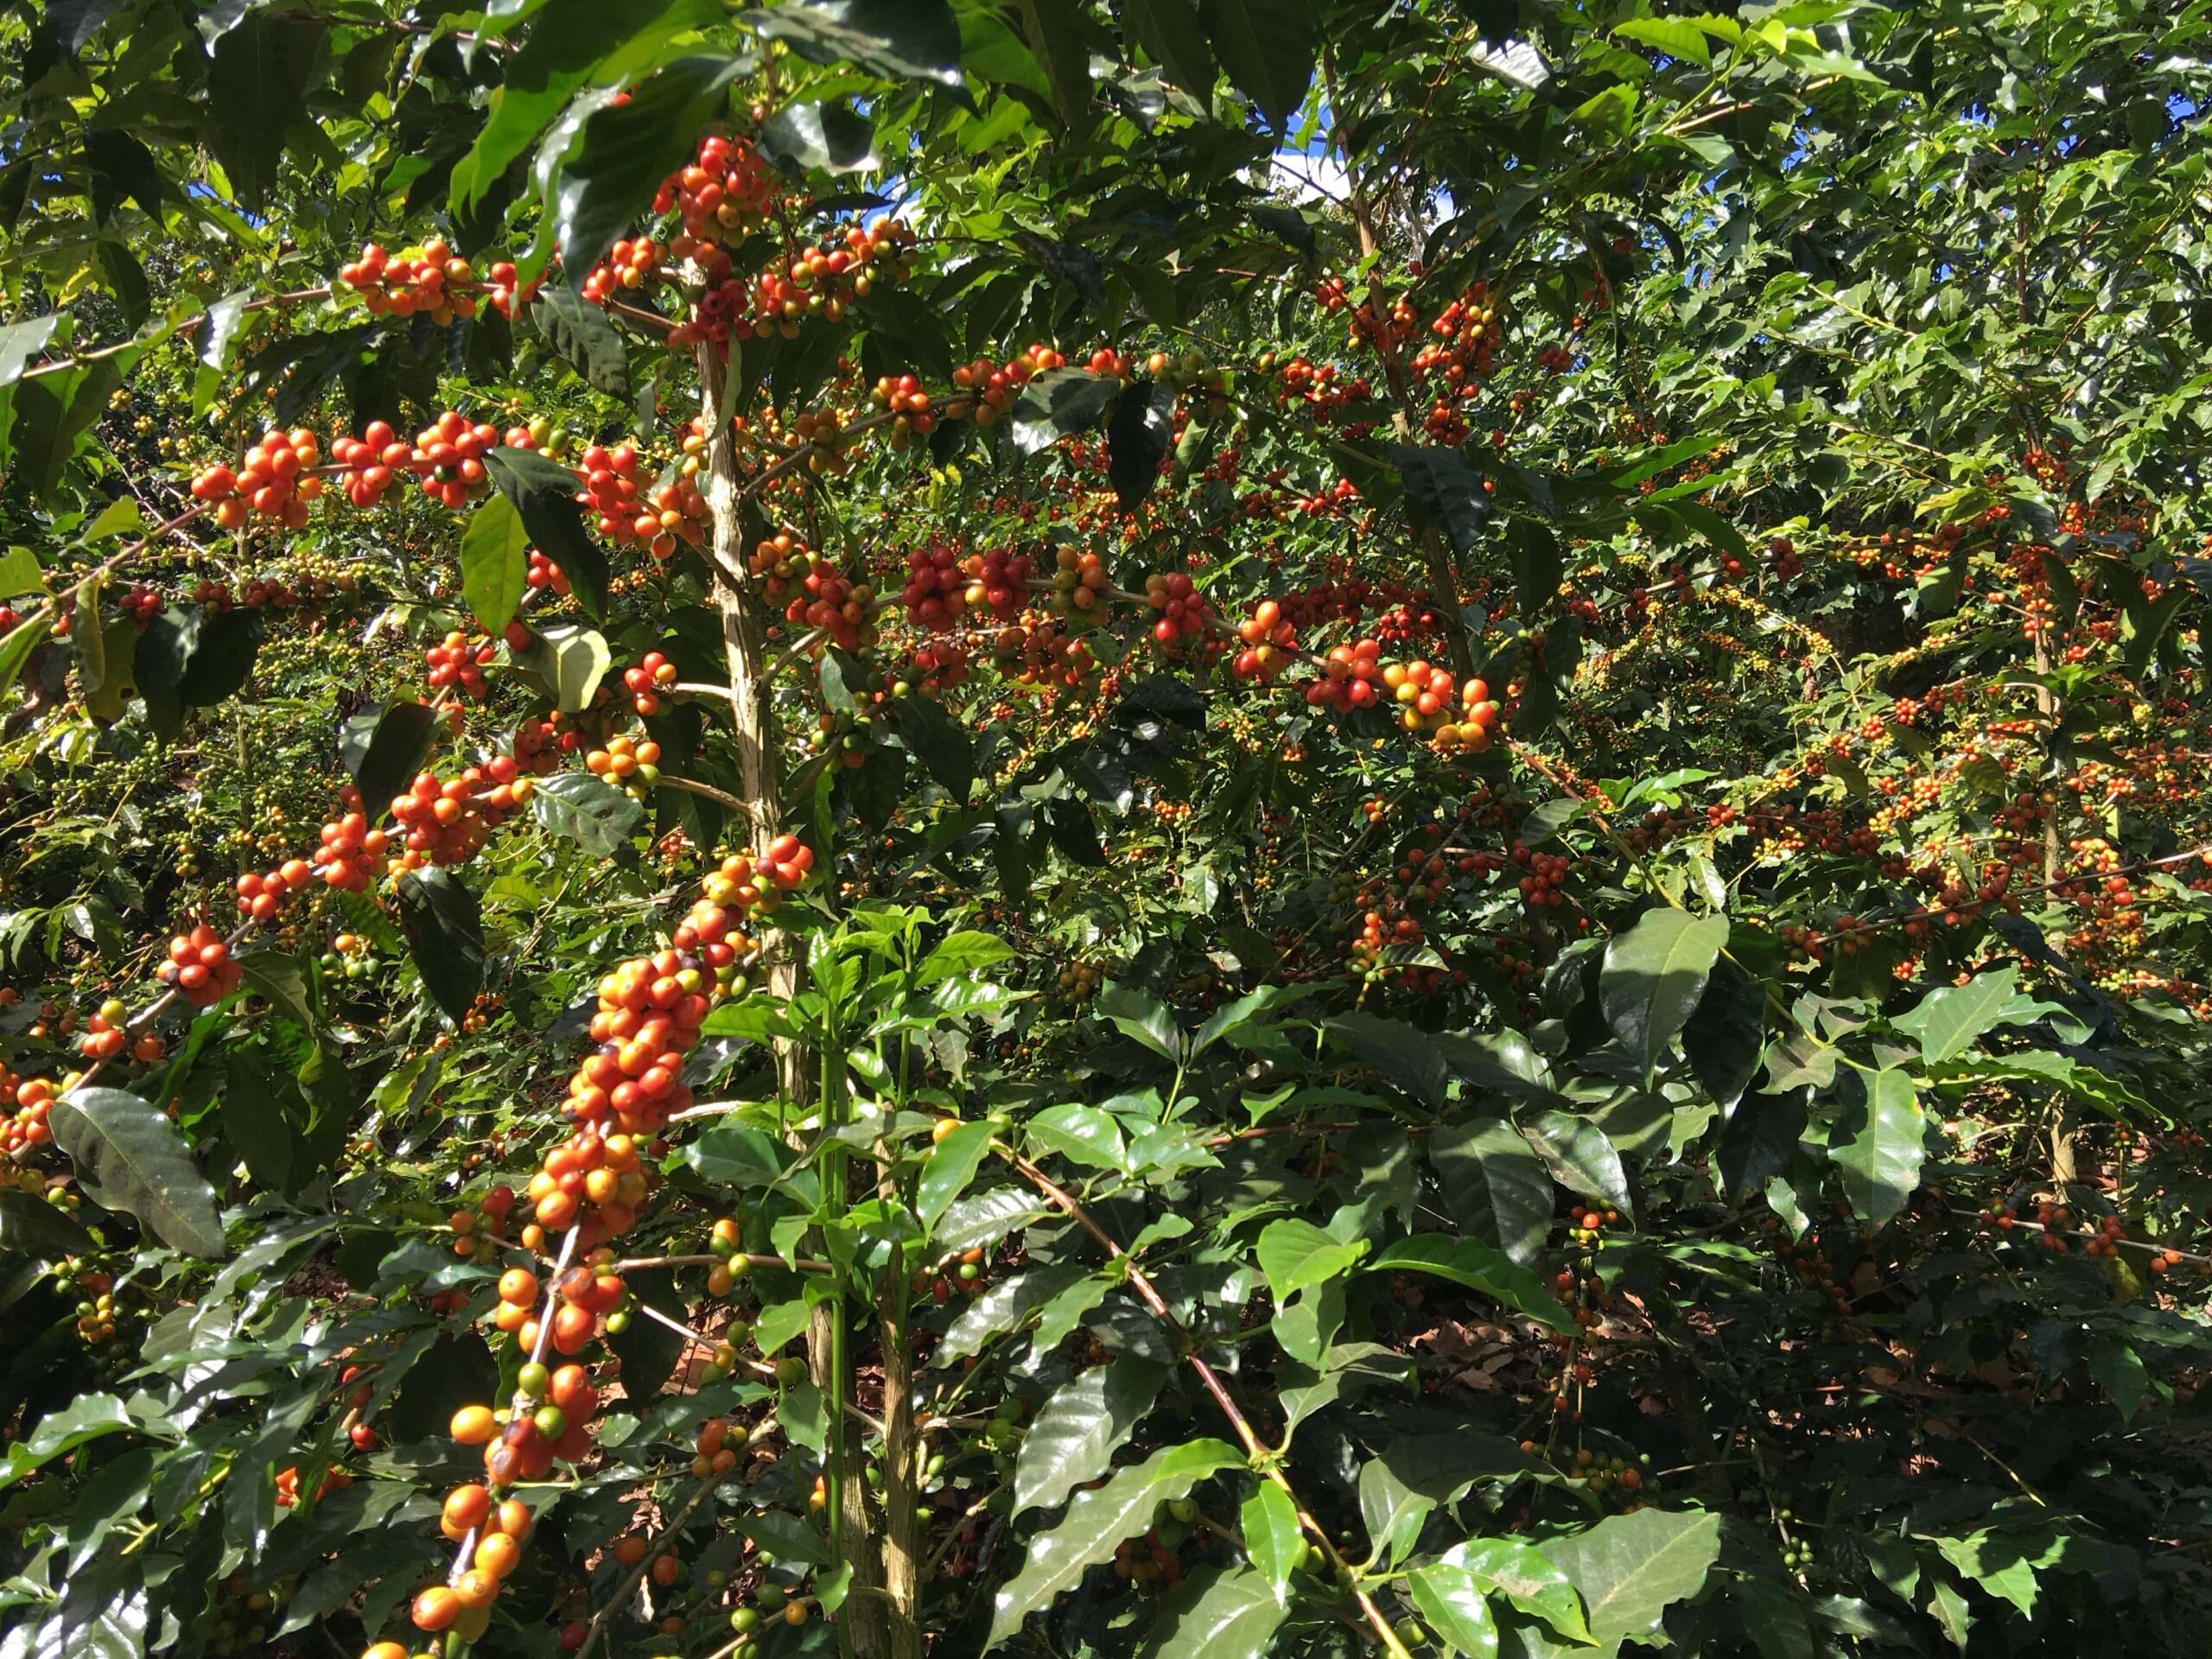 Coffee cherries growing 